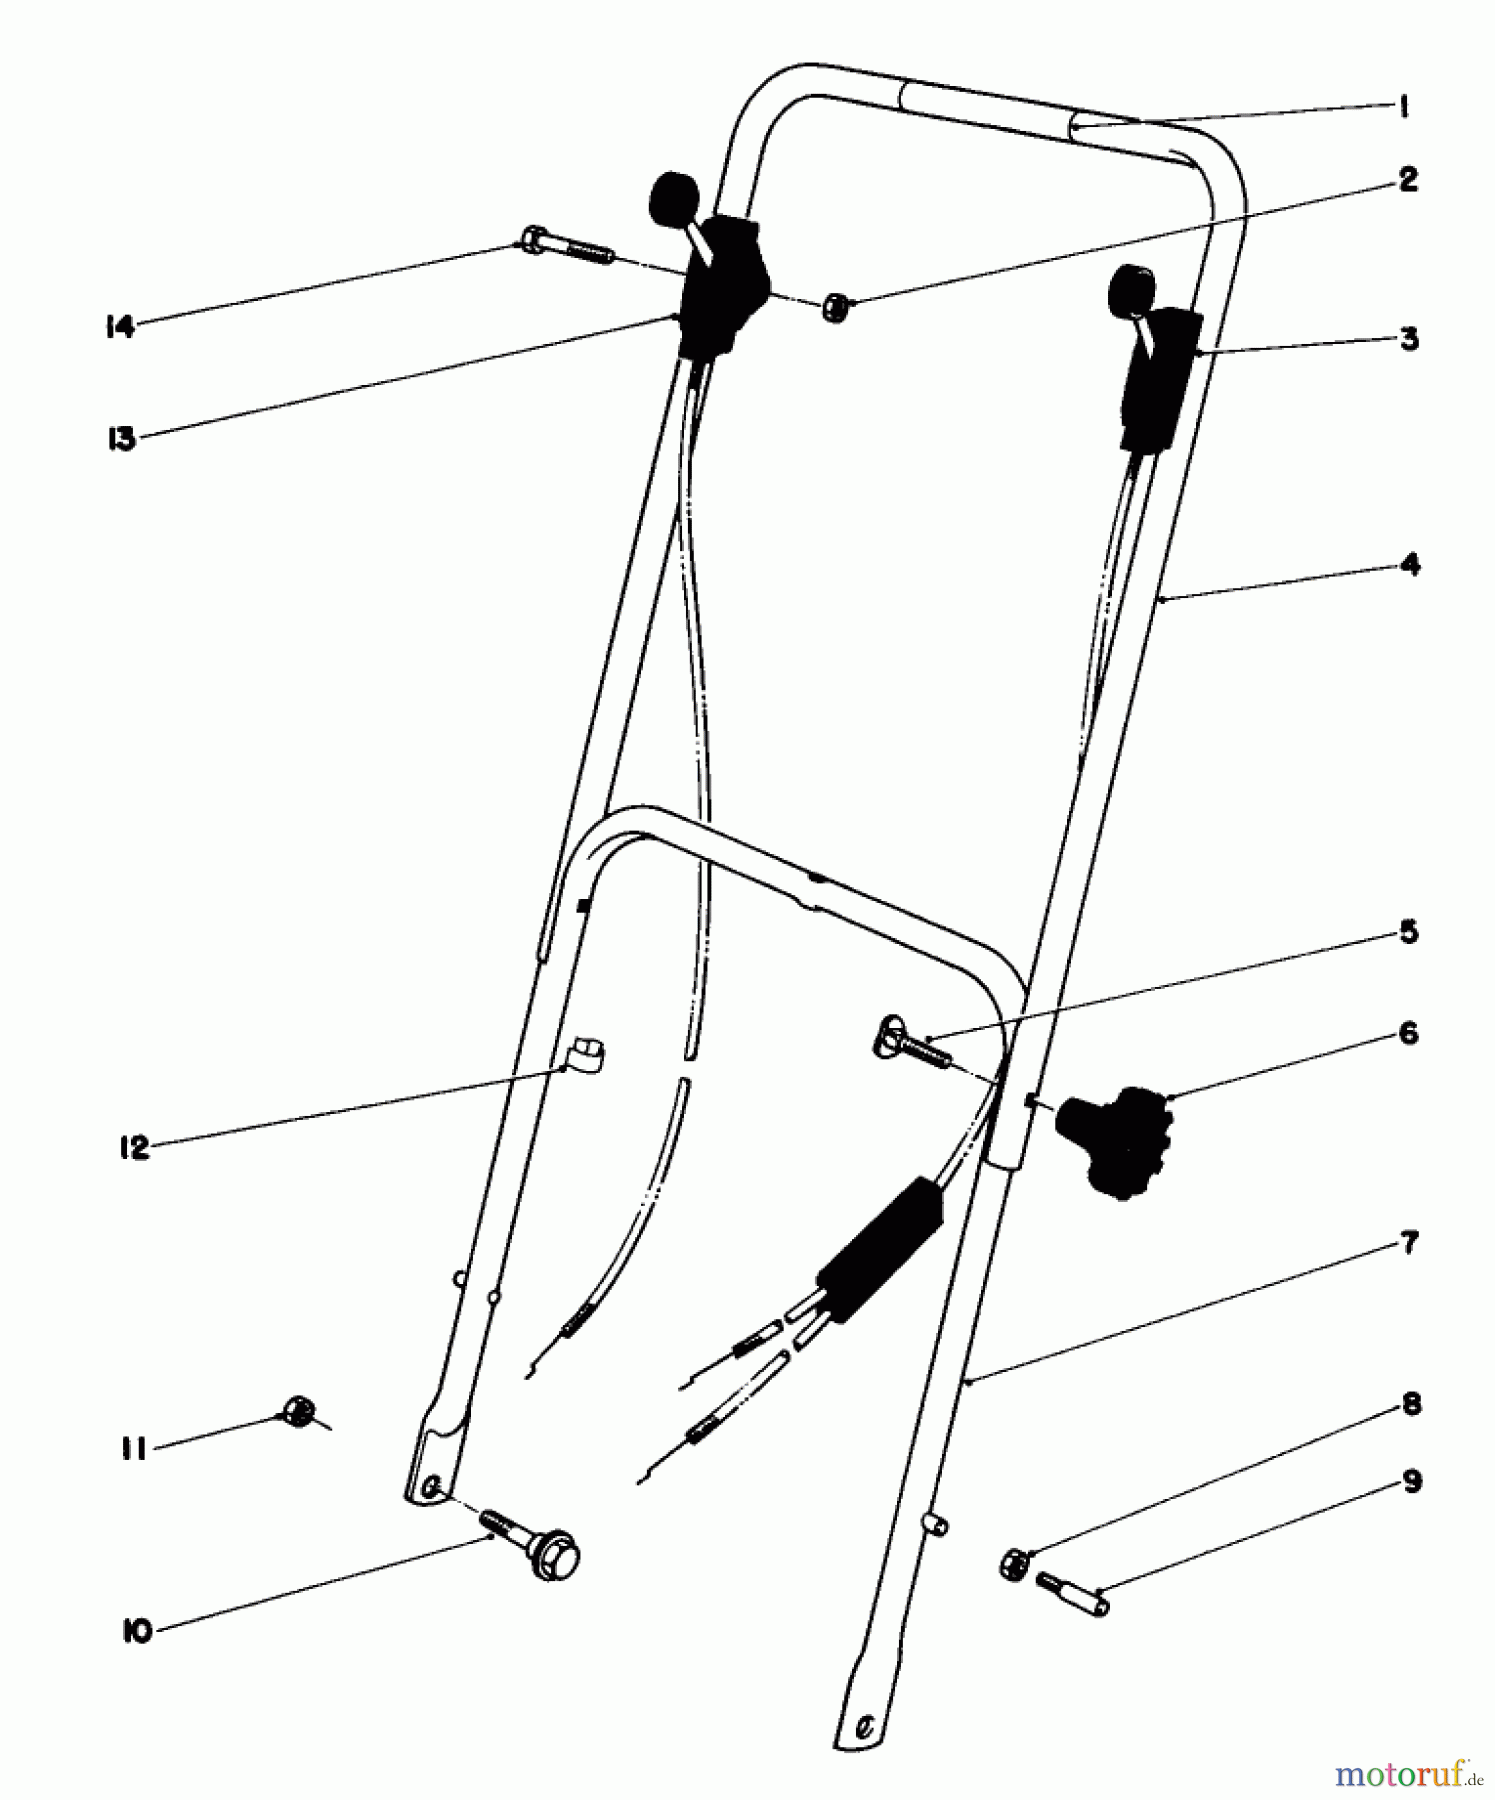  Toro Neu Mowers, Walk-Behind Seite 1 16297 - Toro Lawnmower, 1980 (0000001-0999999) HANDLE ASSEMBLY MODEL 16297